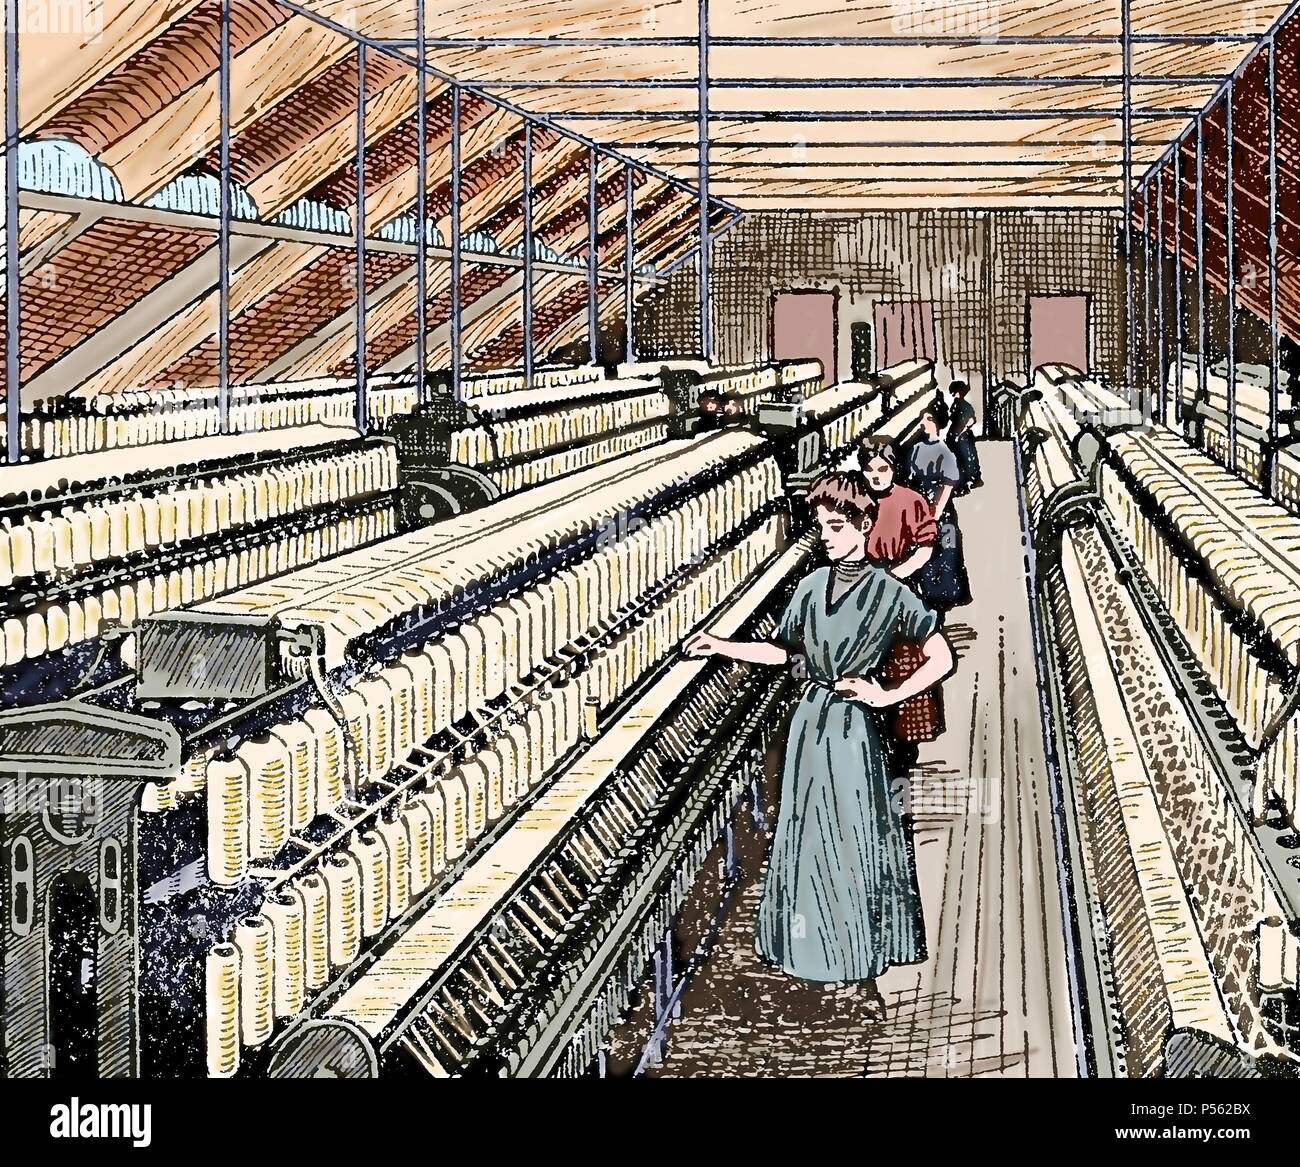 Textilindustrie. 19. Ringspinnen. Herstellung von Baumwollgarn. Frauen in der Roving arbeiten. Farbige Gravur. Stockfoto